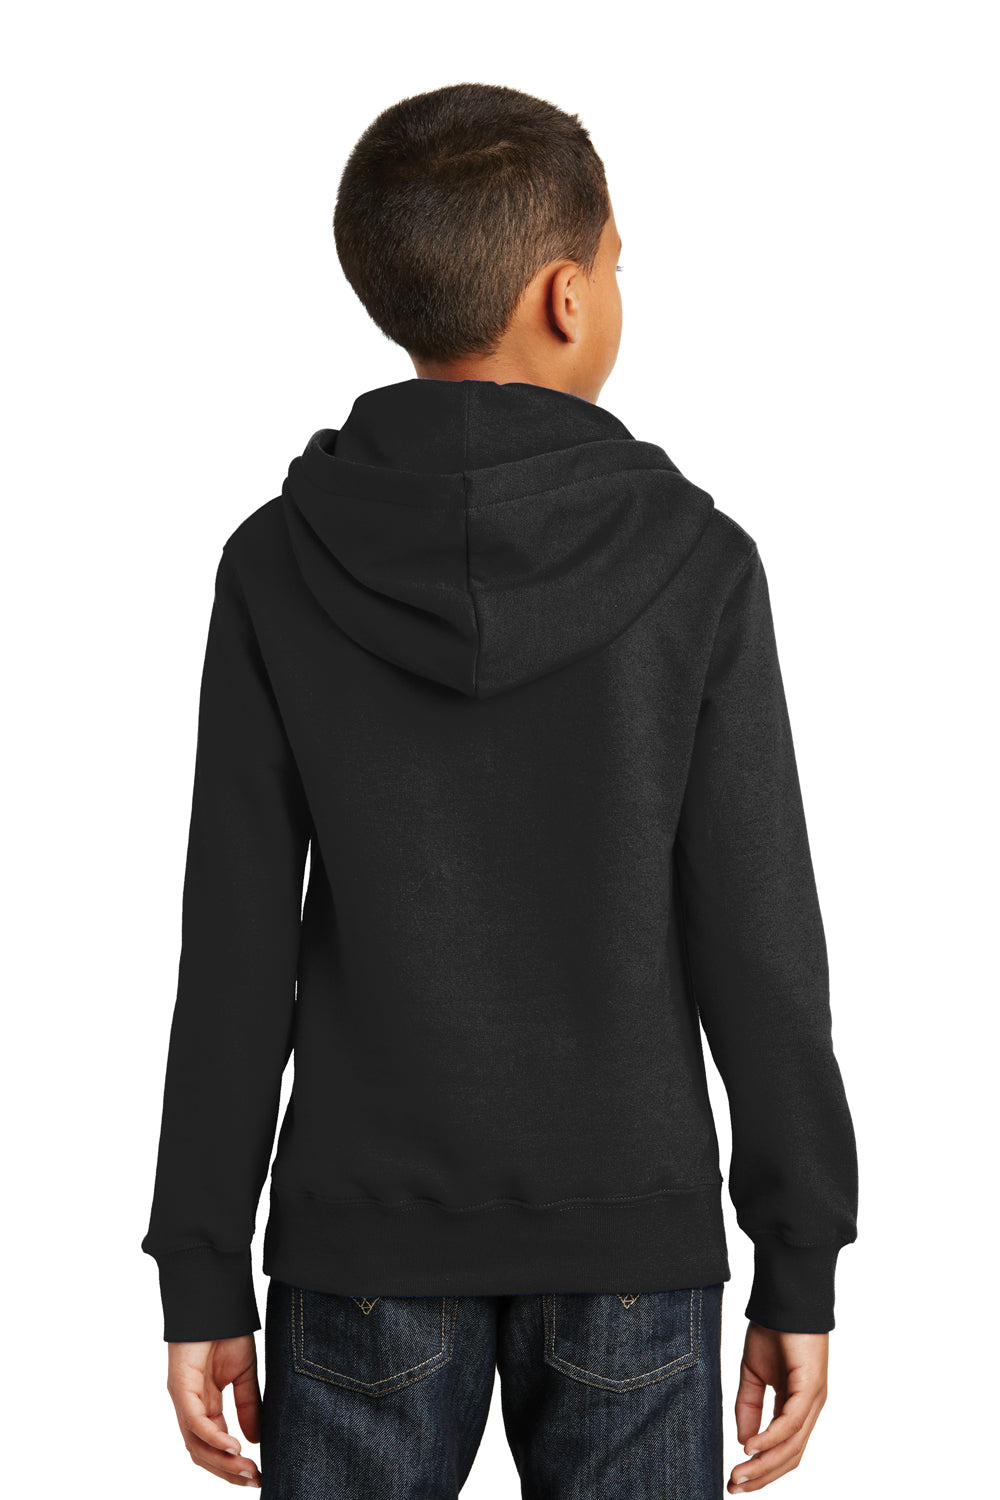 Port & Company PC850YH Youth Fan Favorite Fleece Hooded Sweatshirt Hoodie Black Back